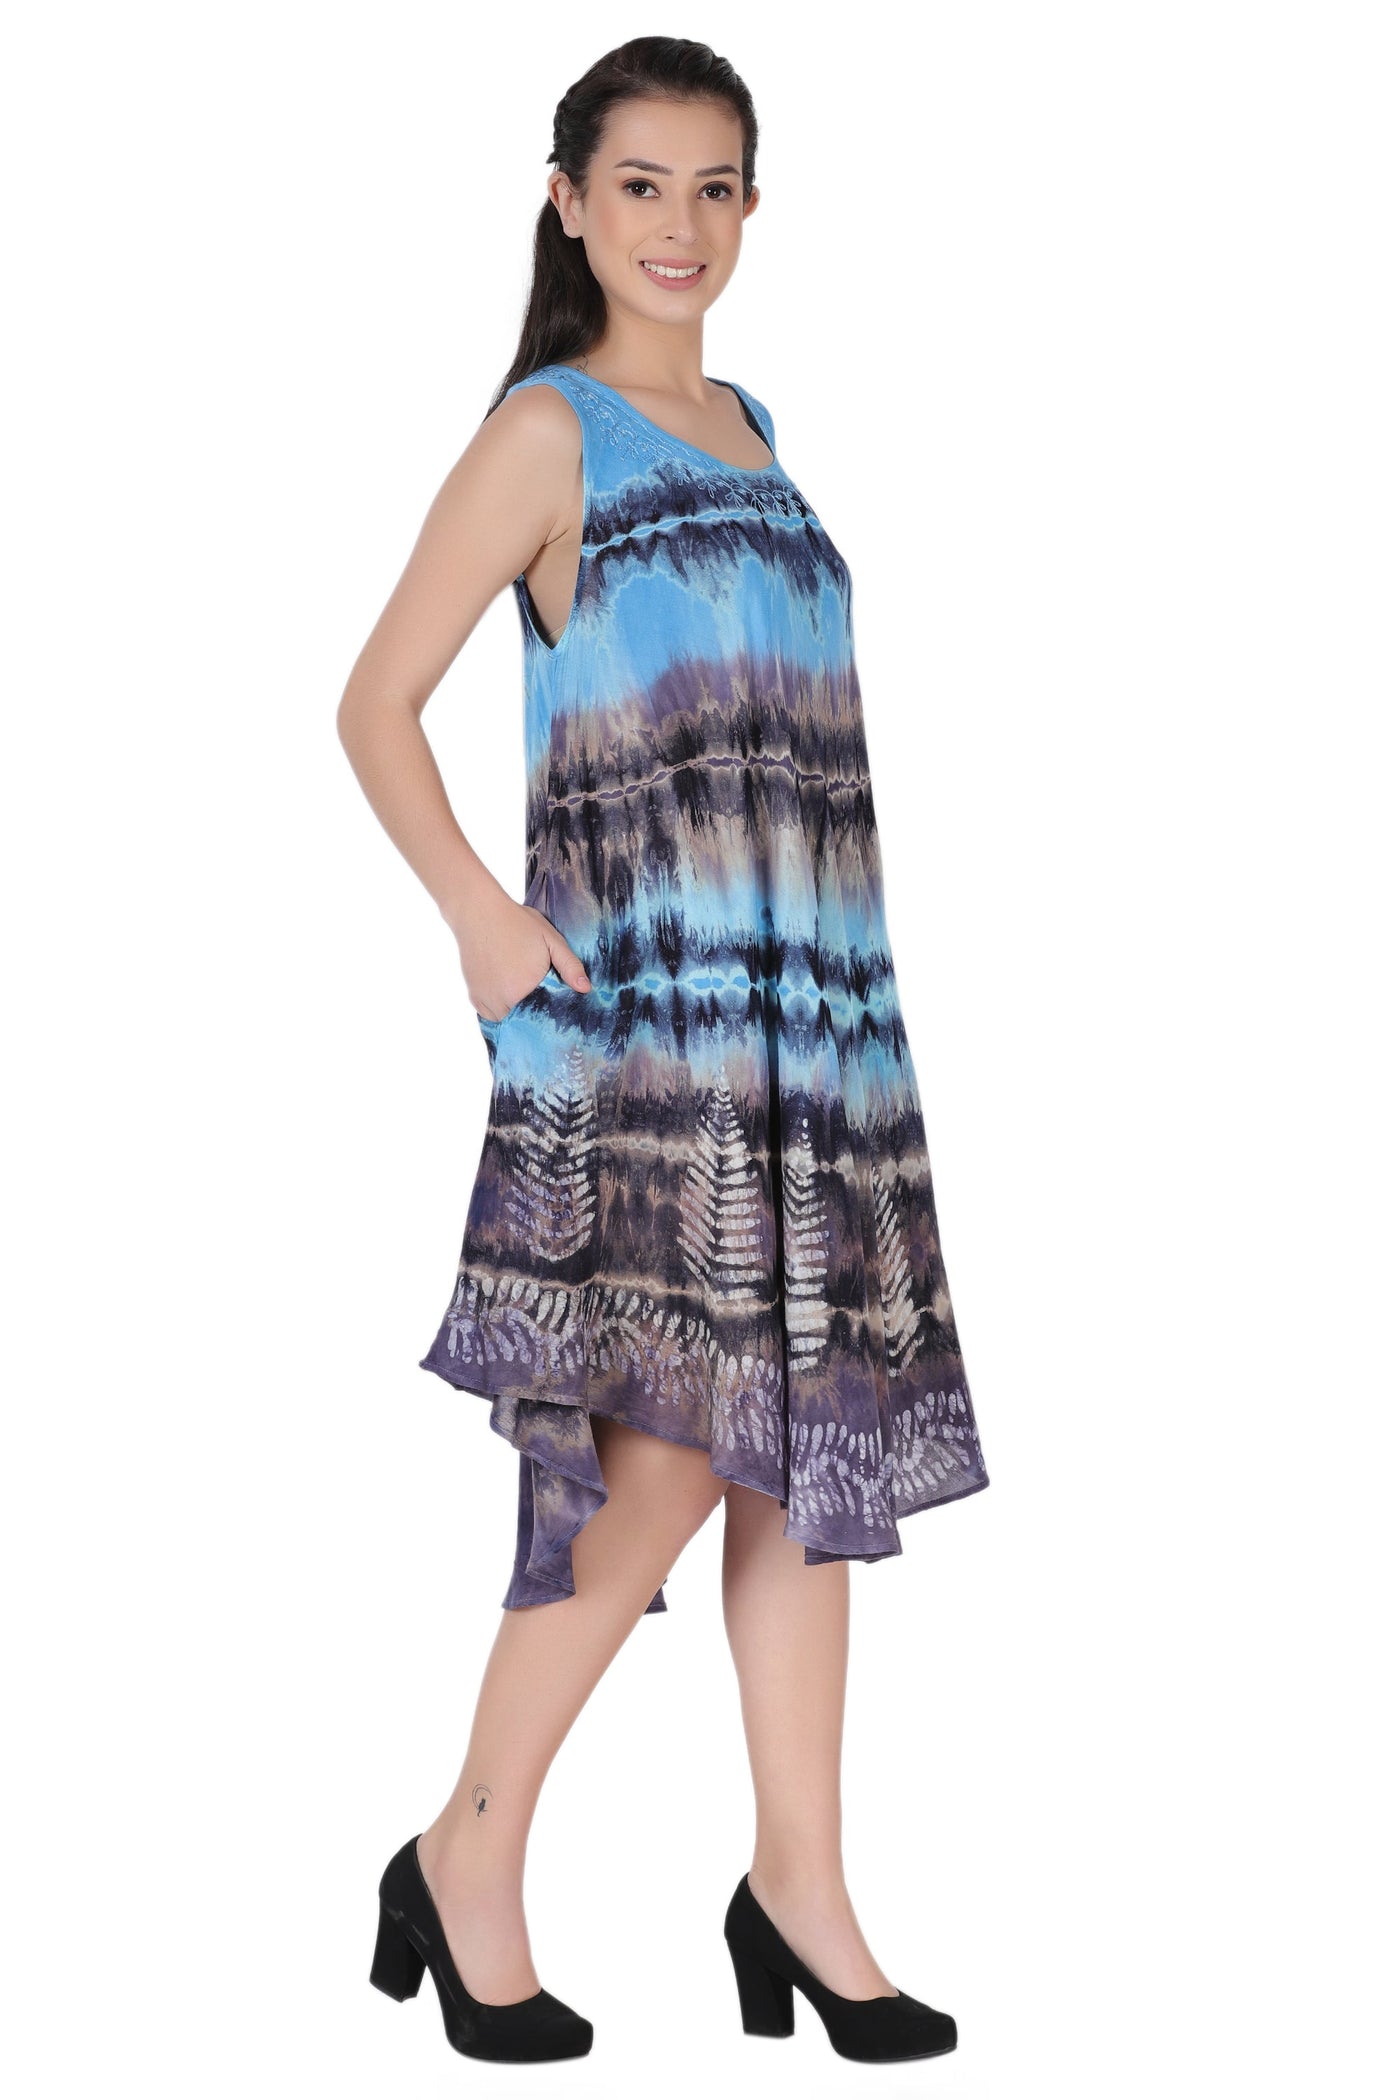 Layered Block Print Tie Dye Beach Dress 422289R